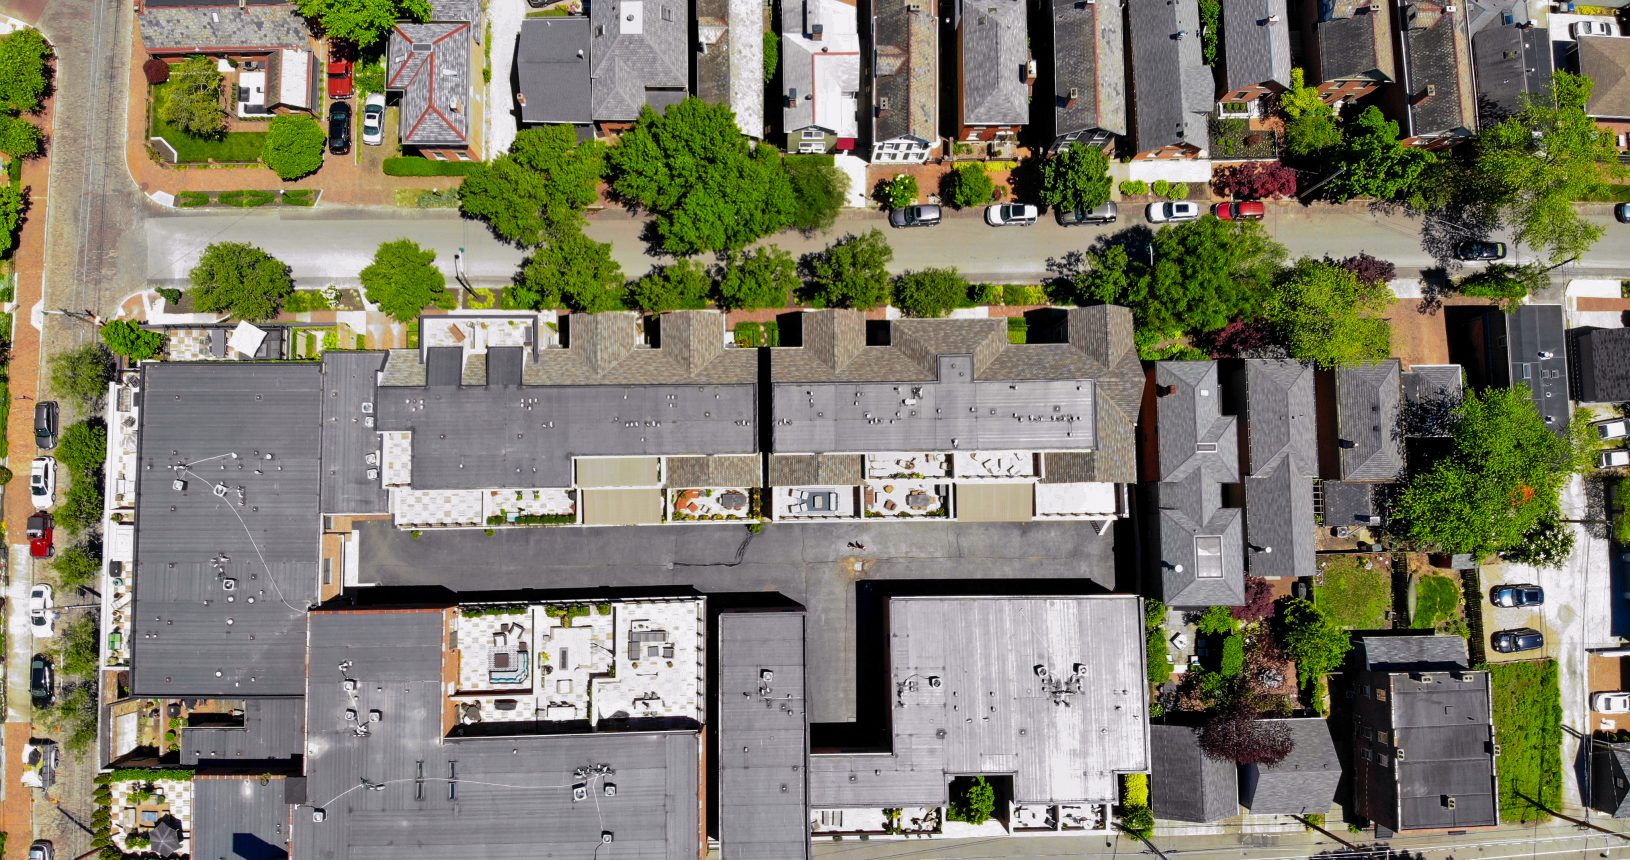 Beck Street Condominiums Aerial View - Commercial Renovation Contractors - Contractors Inc